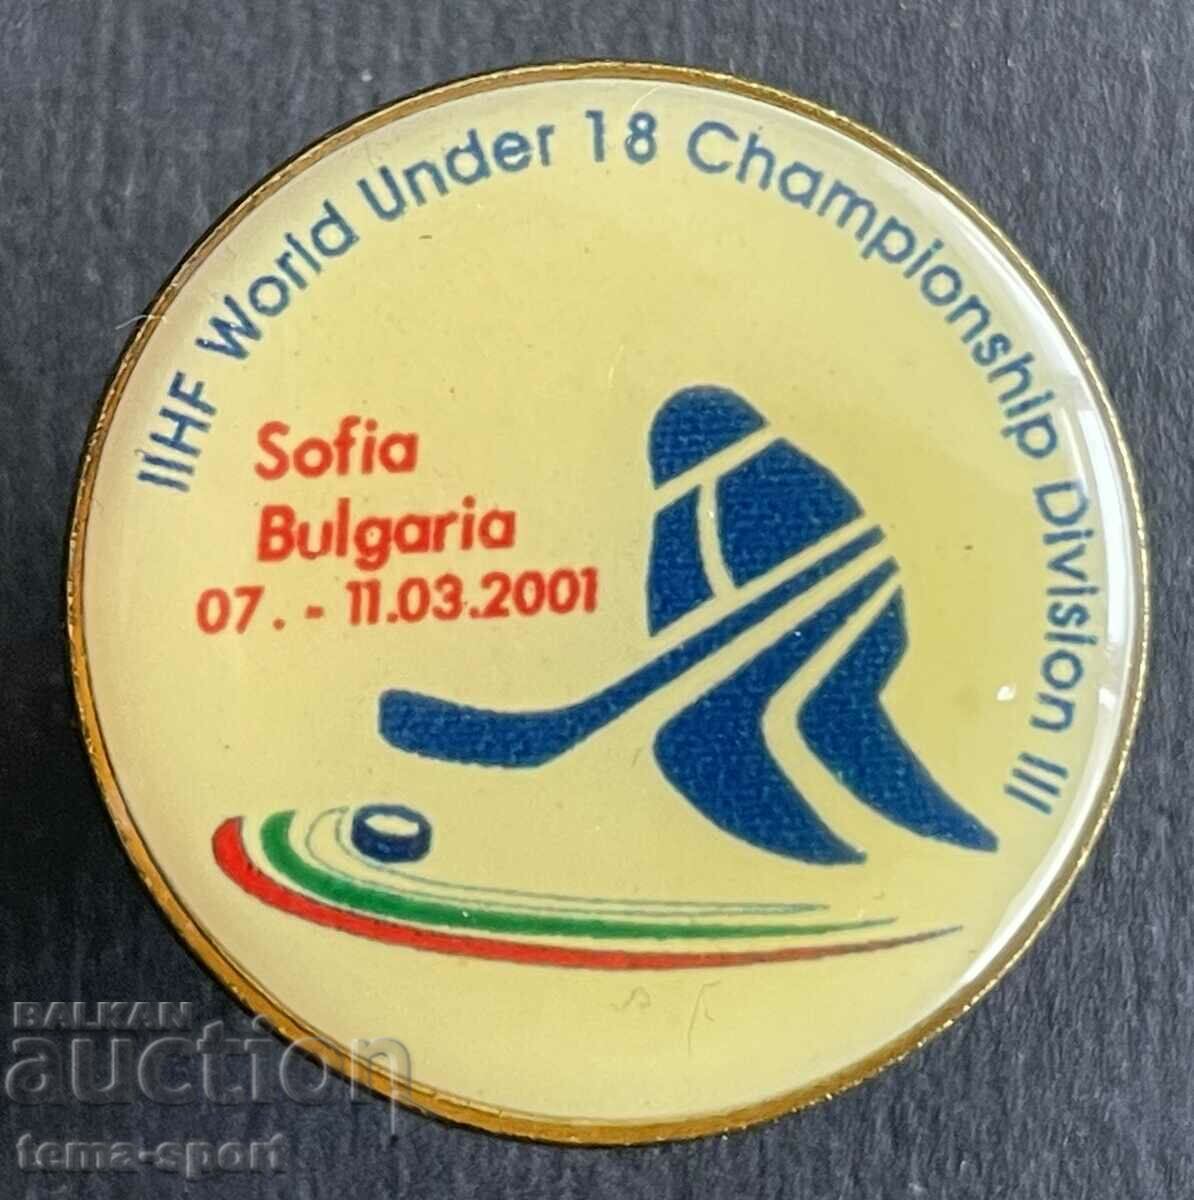 651 Βουλγαρία υπογράφει πρωτάθλημα χόκεϊ Σόφια 2001.